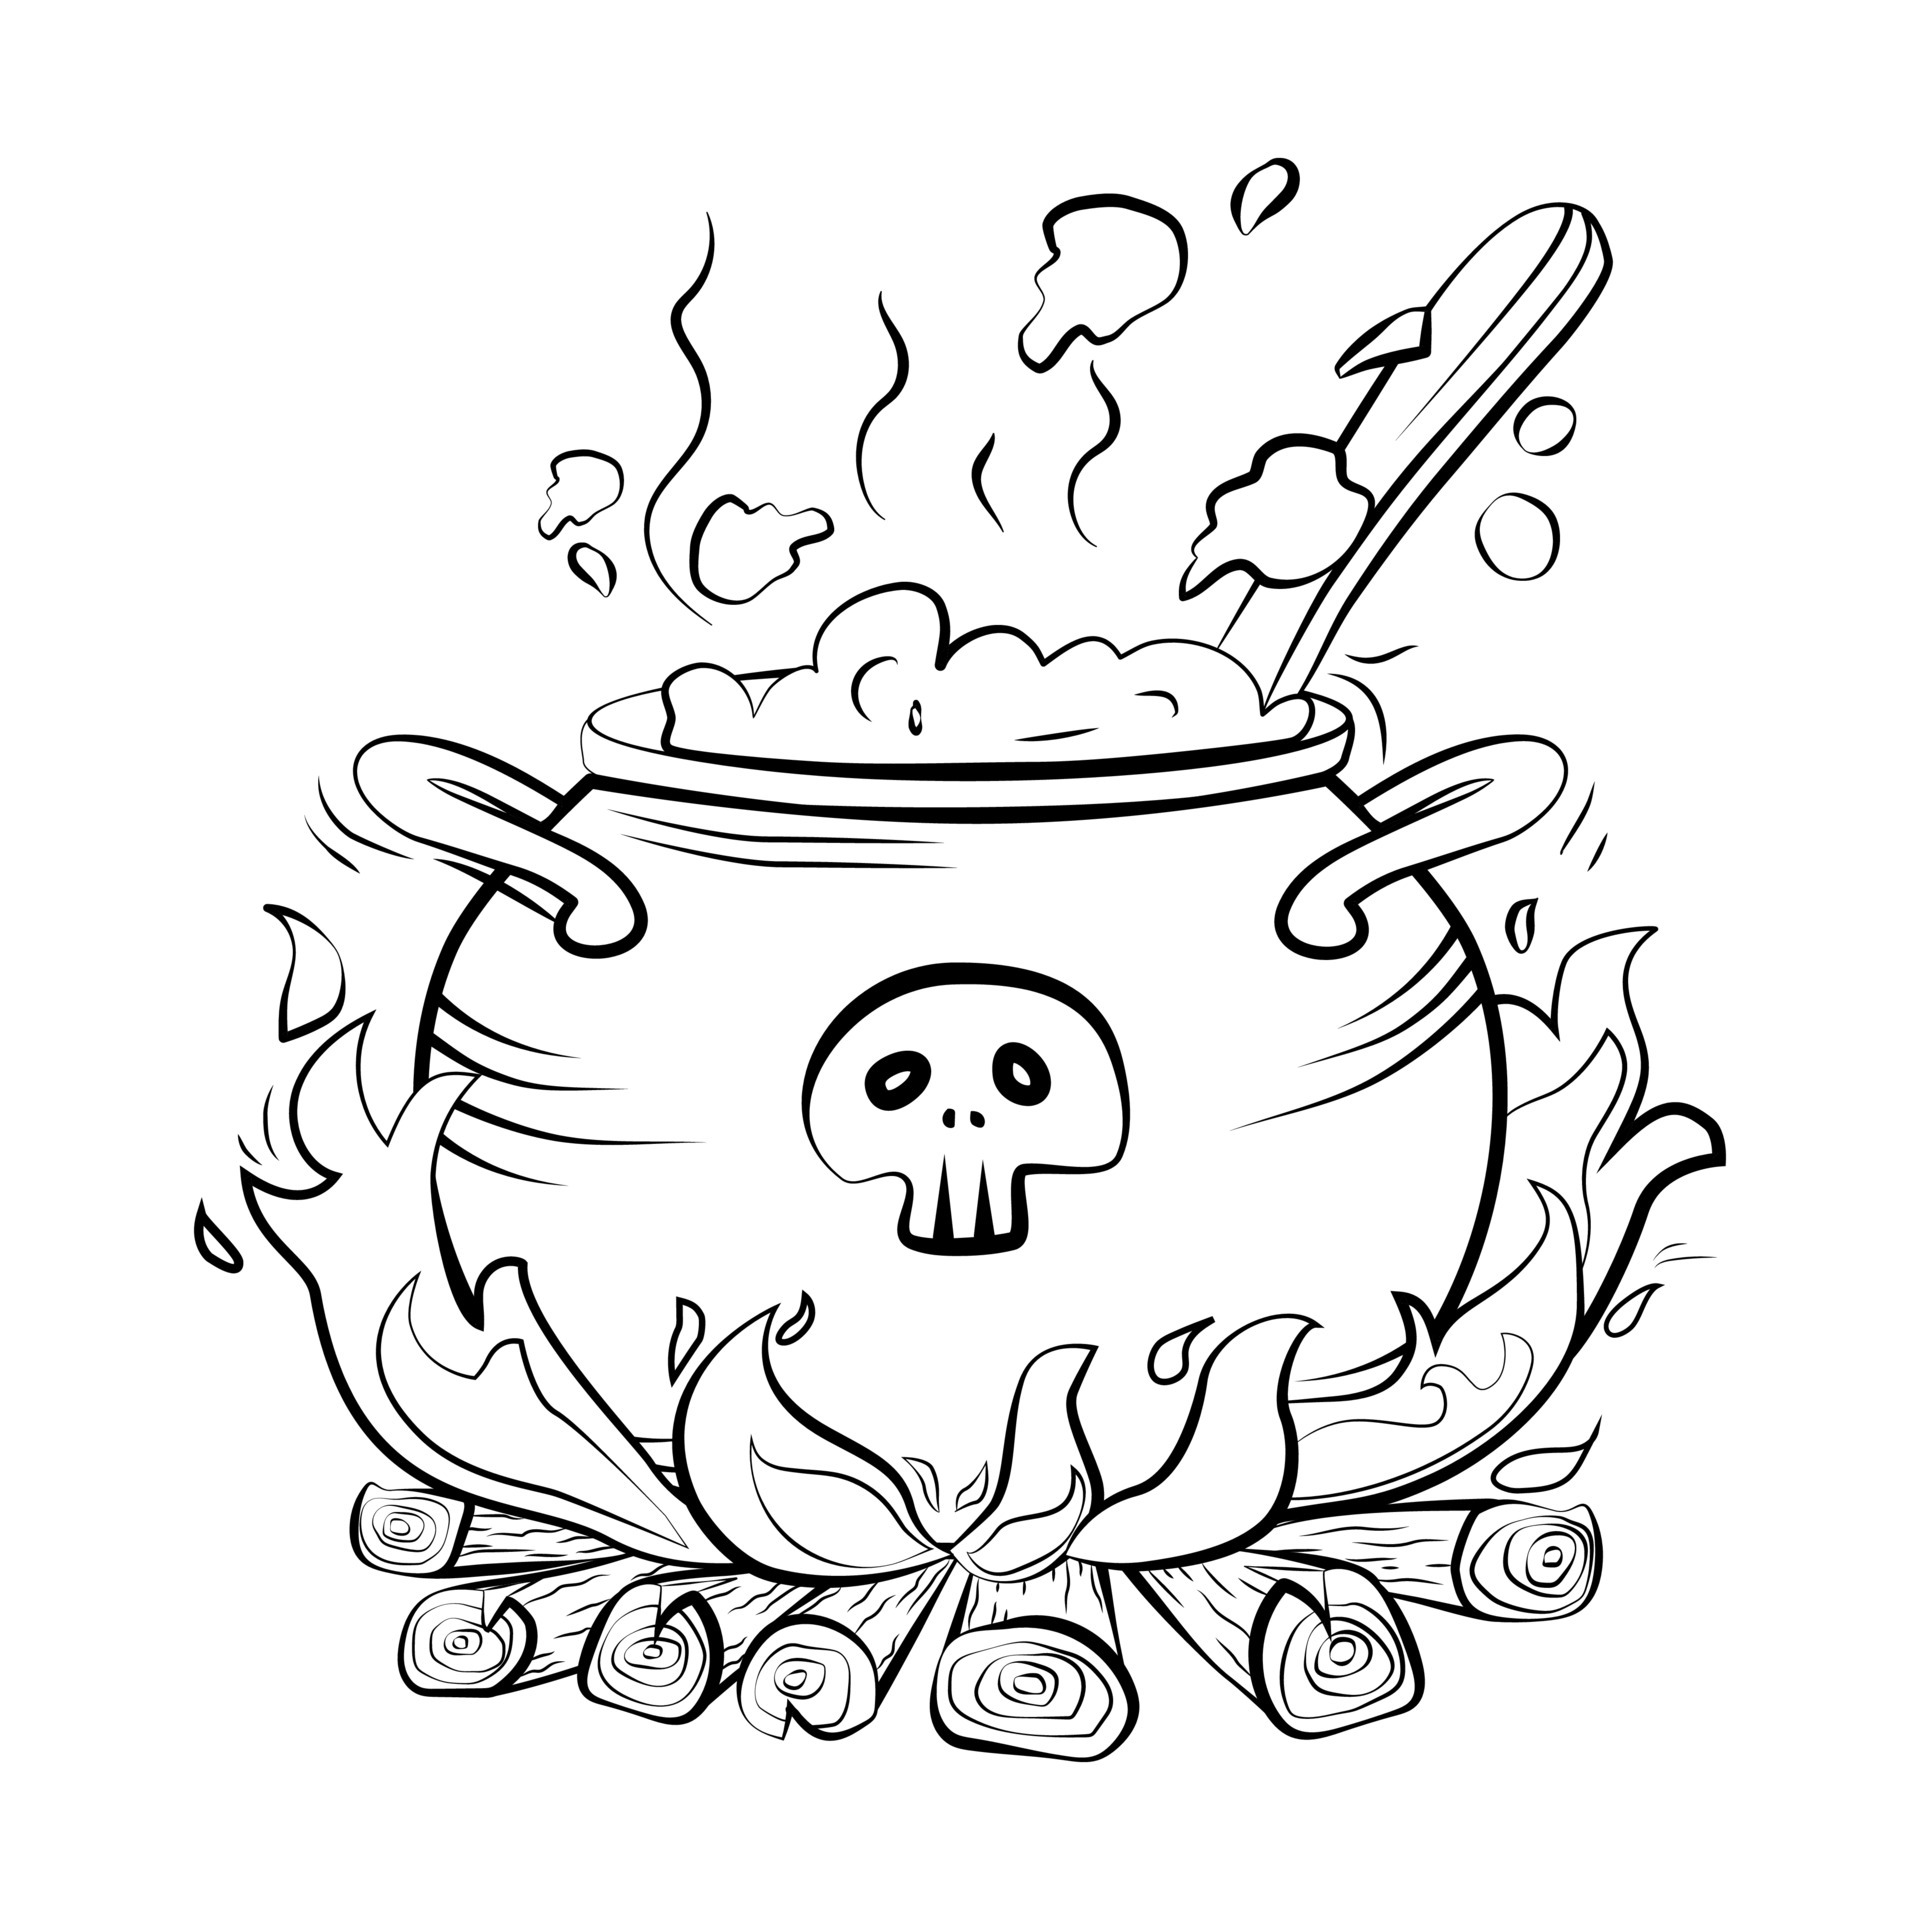 Brujas hirviendo calderos caldera de humo de halloween caldero de bruja para  cocinar poción mágica magos olla con sopa líquida de burbuja púrpura o  caldo ingeniosa ilustración vectorial